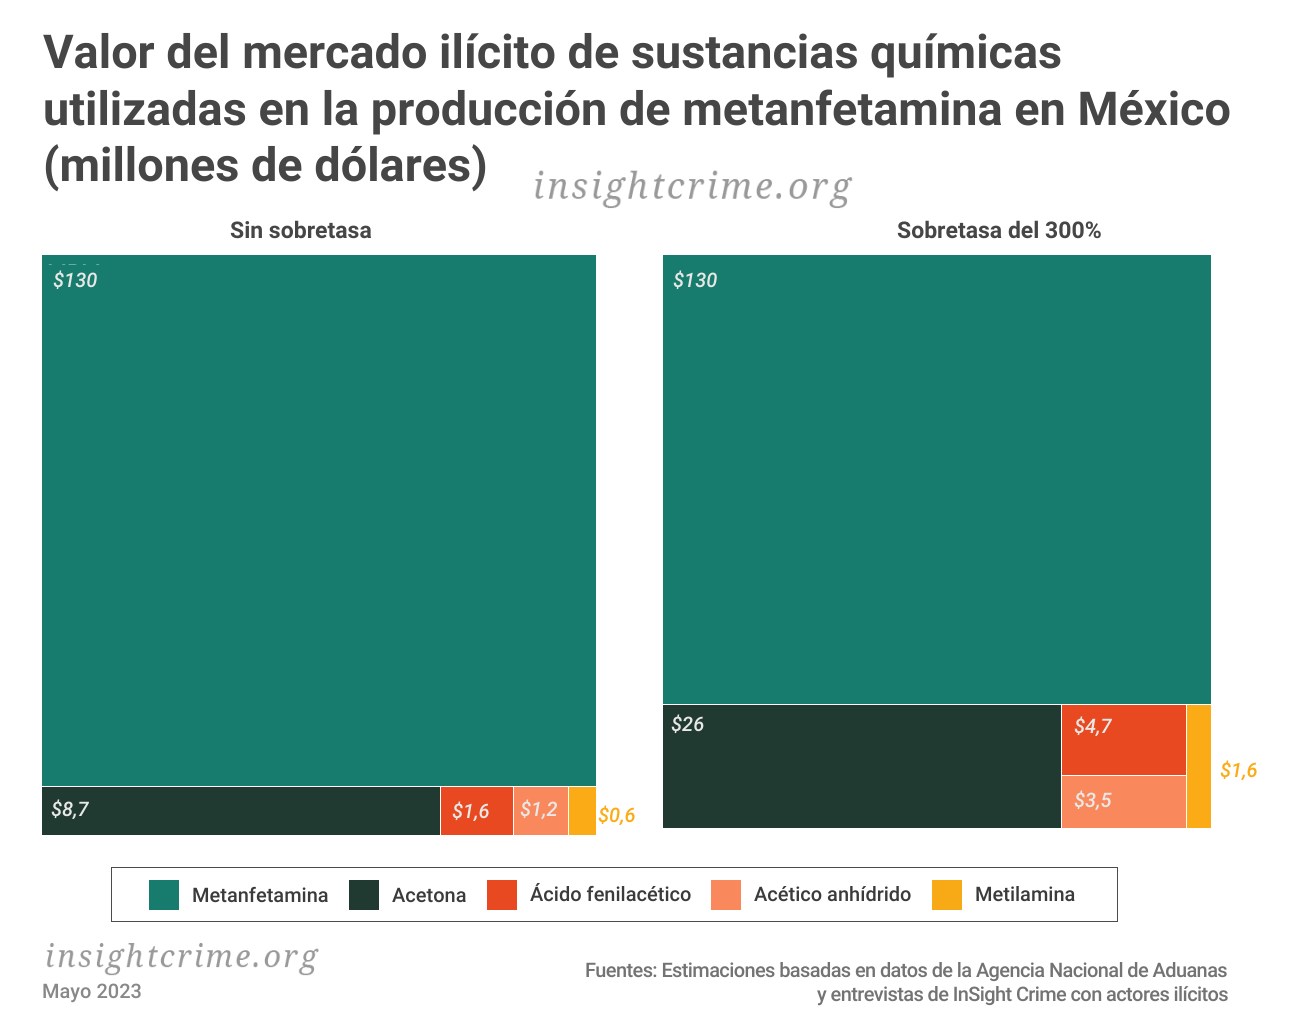 Este gráfico muestra el valor del mercado ilícito de sustancias químicas utilizadas en la producción de metanfetamina en México